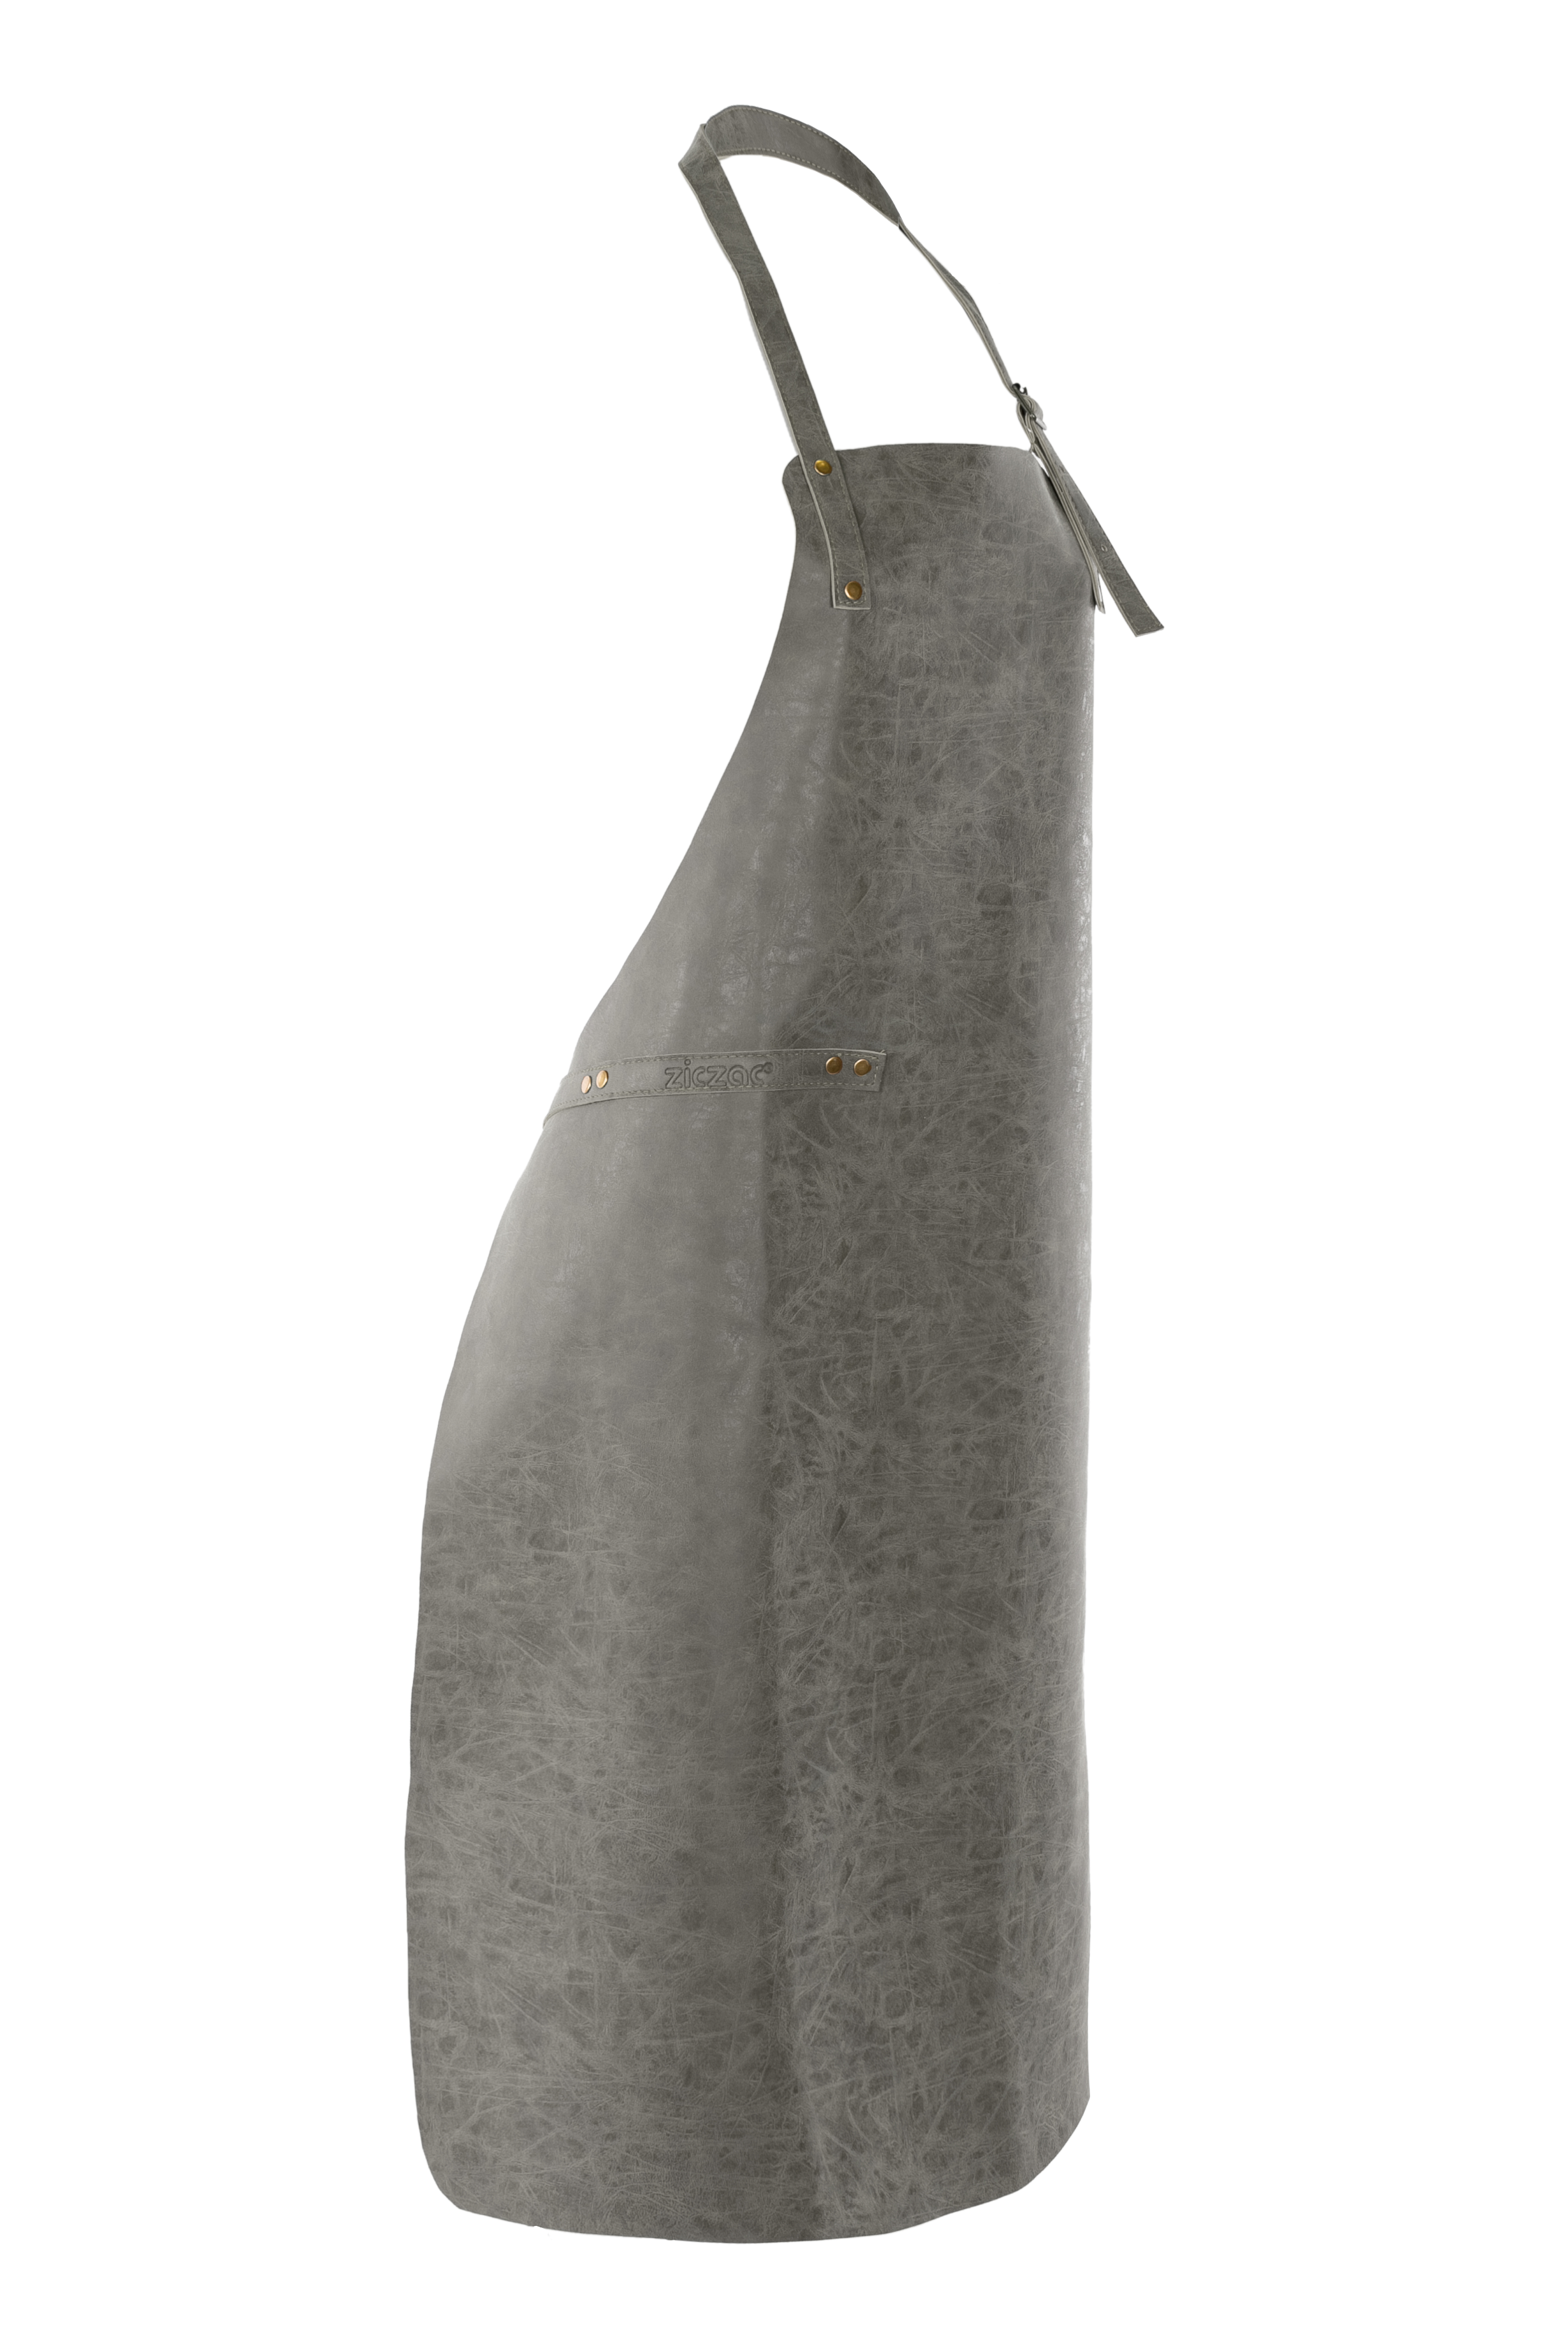 Schort TRUMAN (Towel loop - no pocket - opt. Accessory bag), 70x90 cm, charcoal